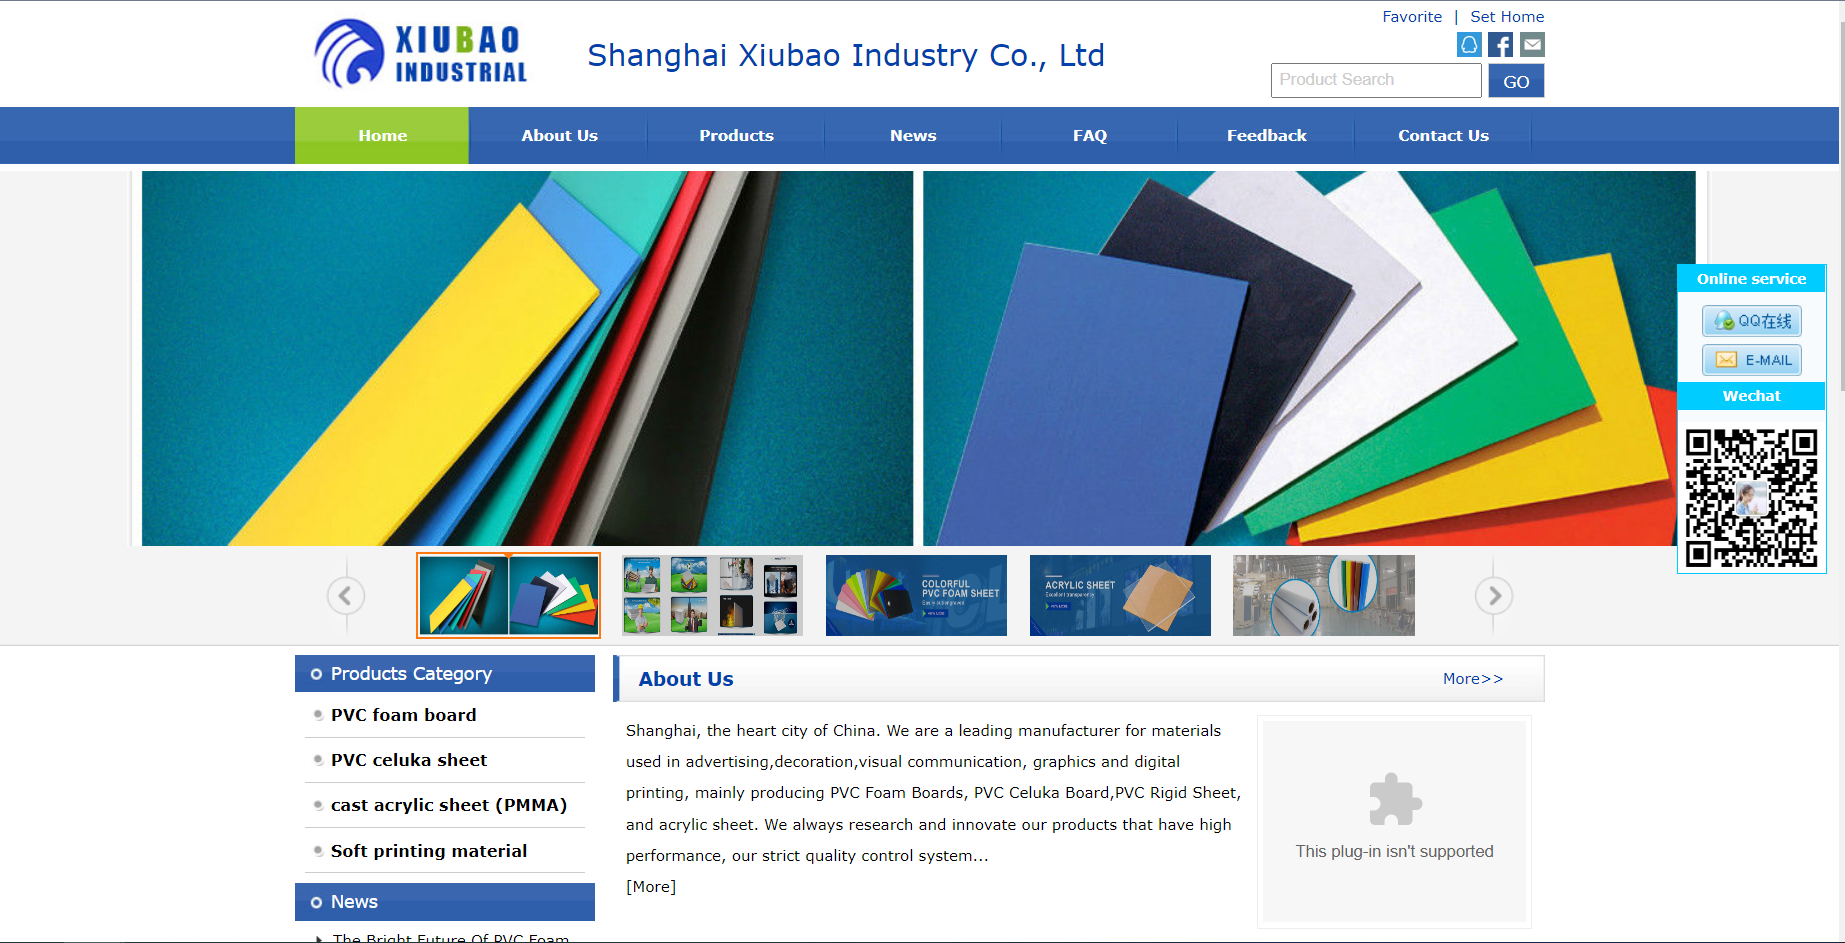 Shanghai Xiubao Industry Co, Ltd